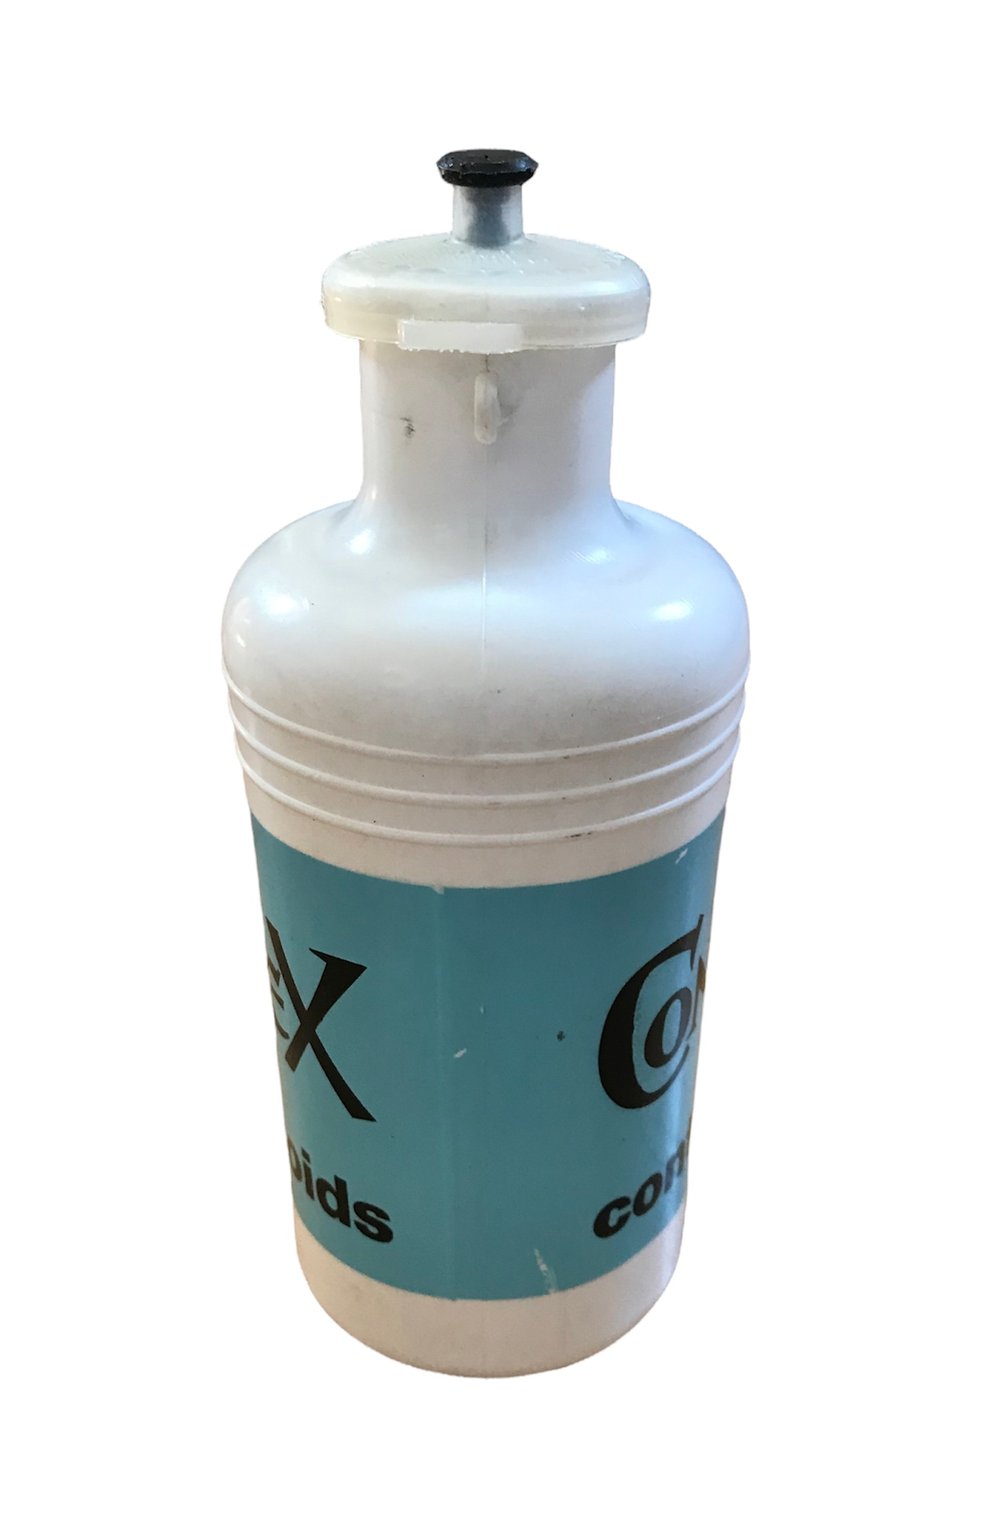 1976-78 - Tour de France / Contrex water bottle